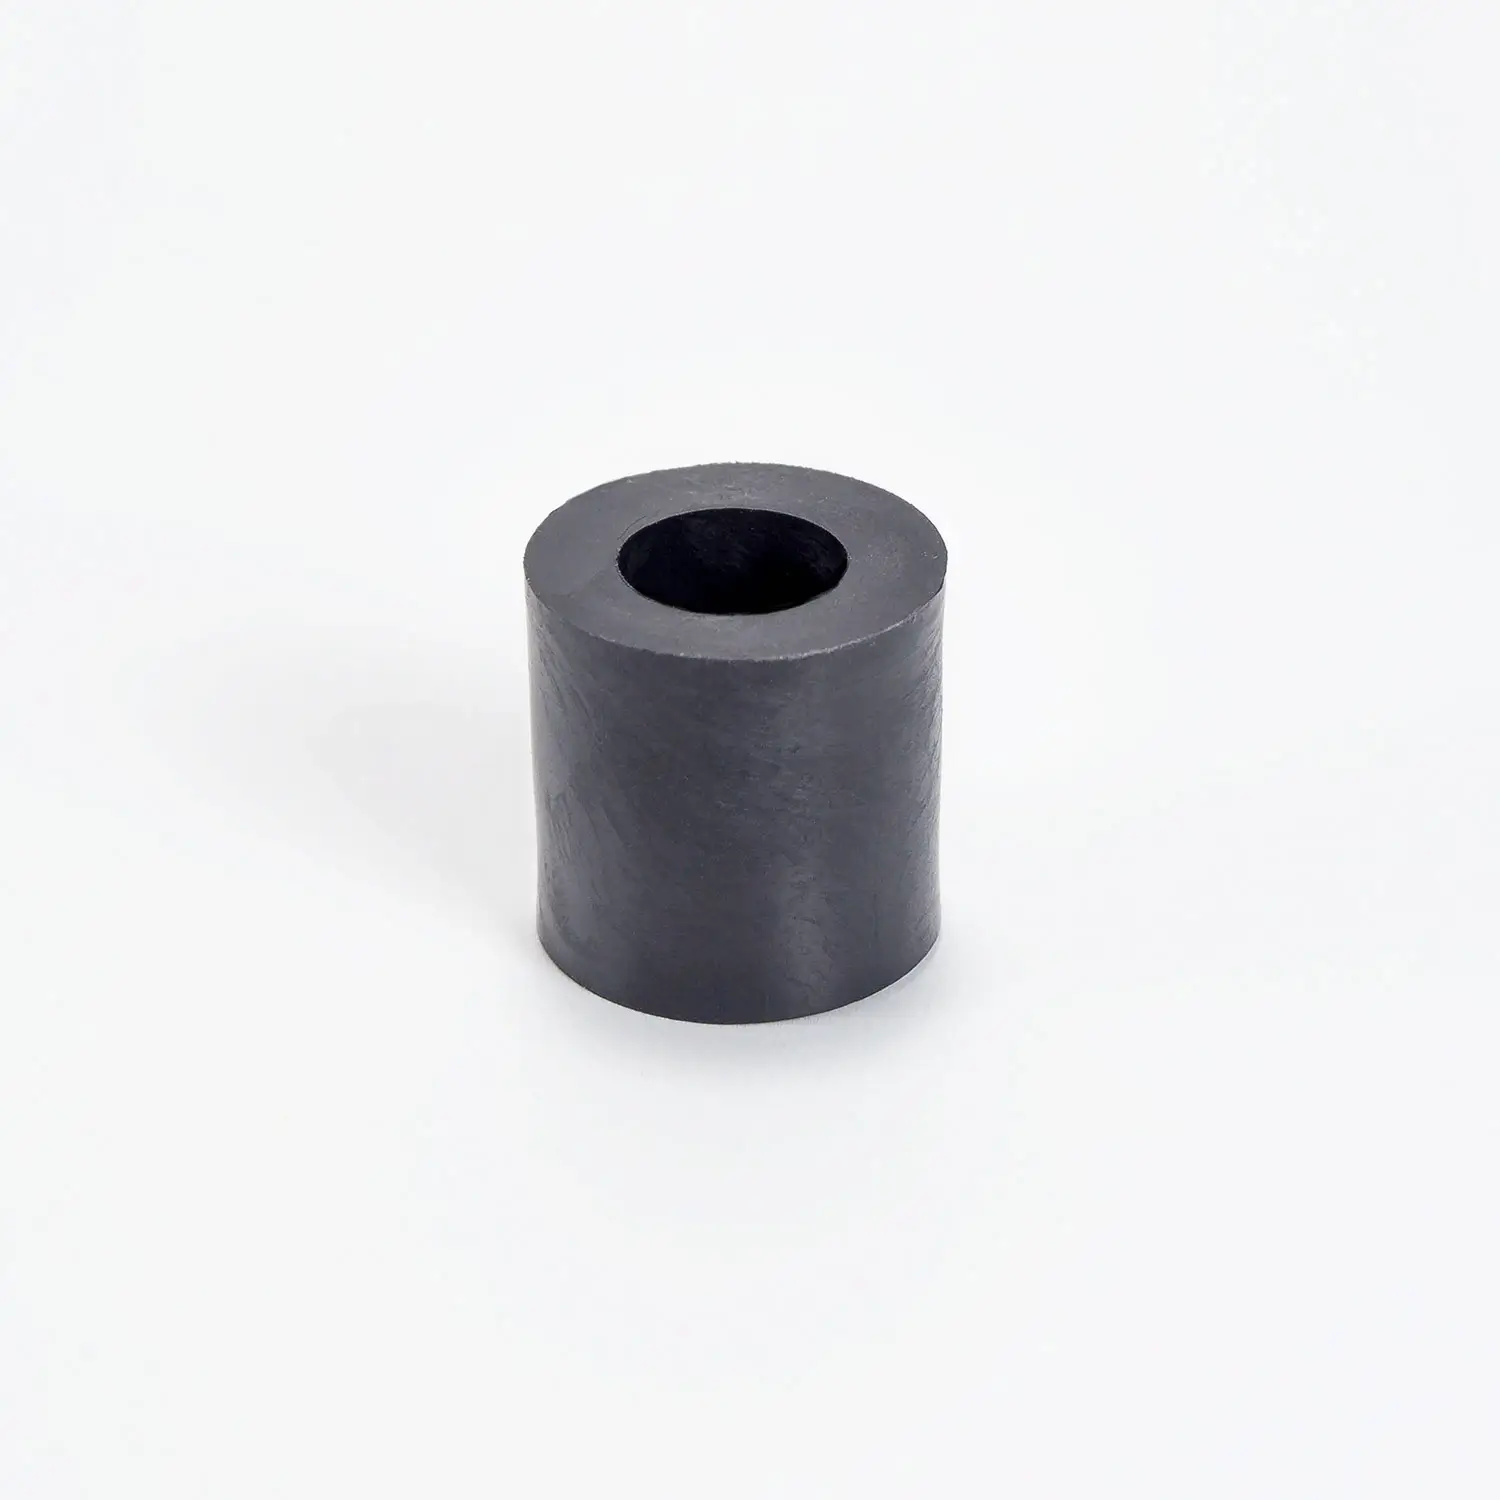 Distanzhüöse Kunststoff schwarz 7mm